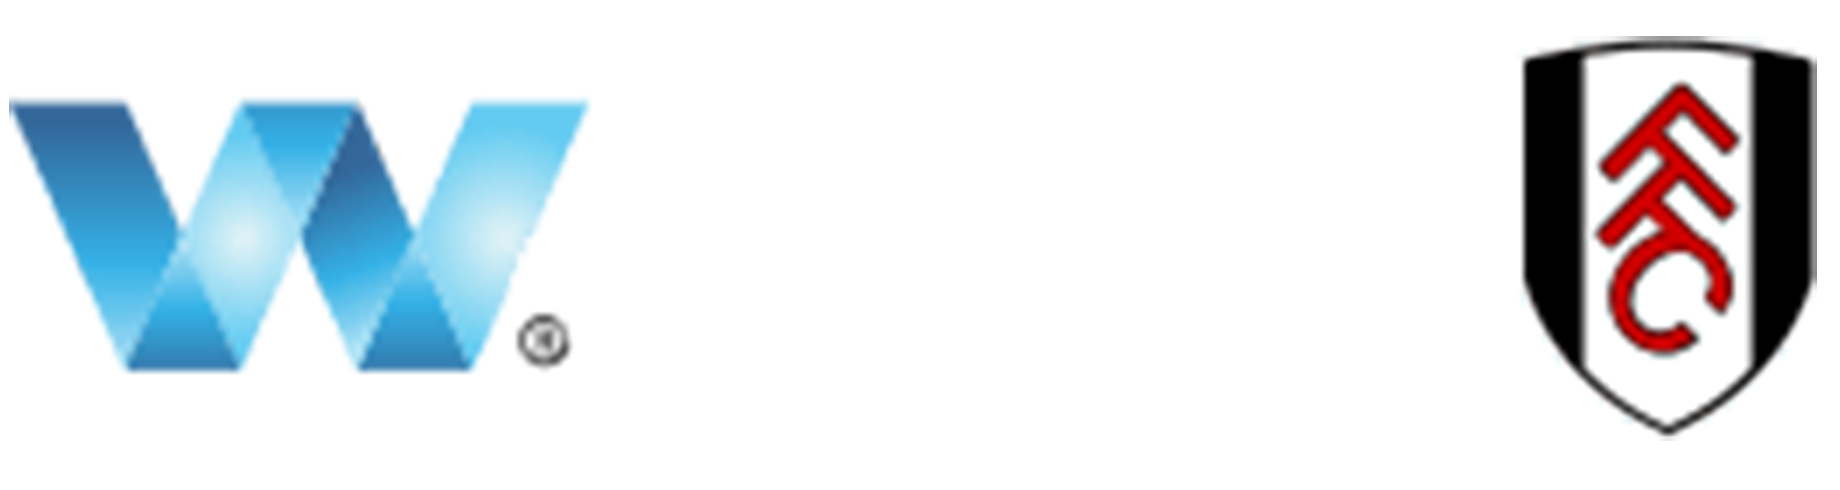 W88 - ทางเข้า W88KUB มือถือล่าสุด คาสิโนออนไลน์ W888